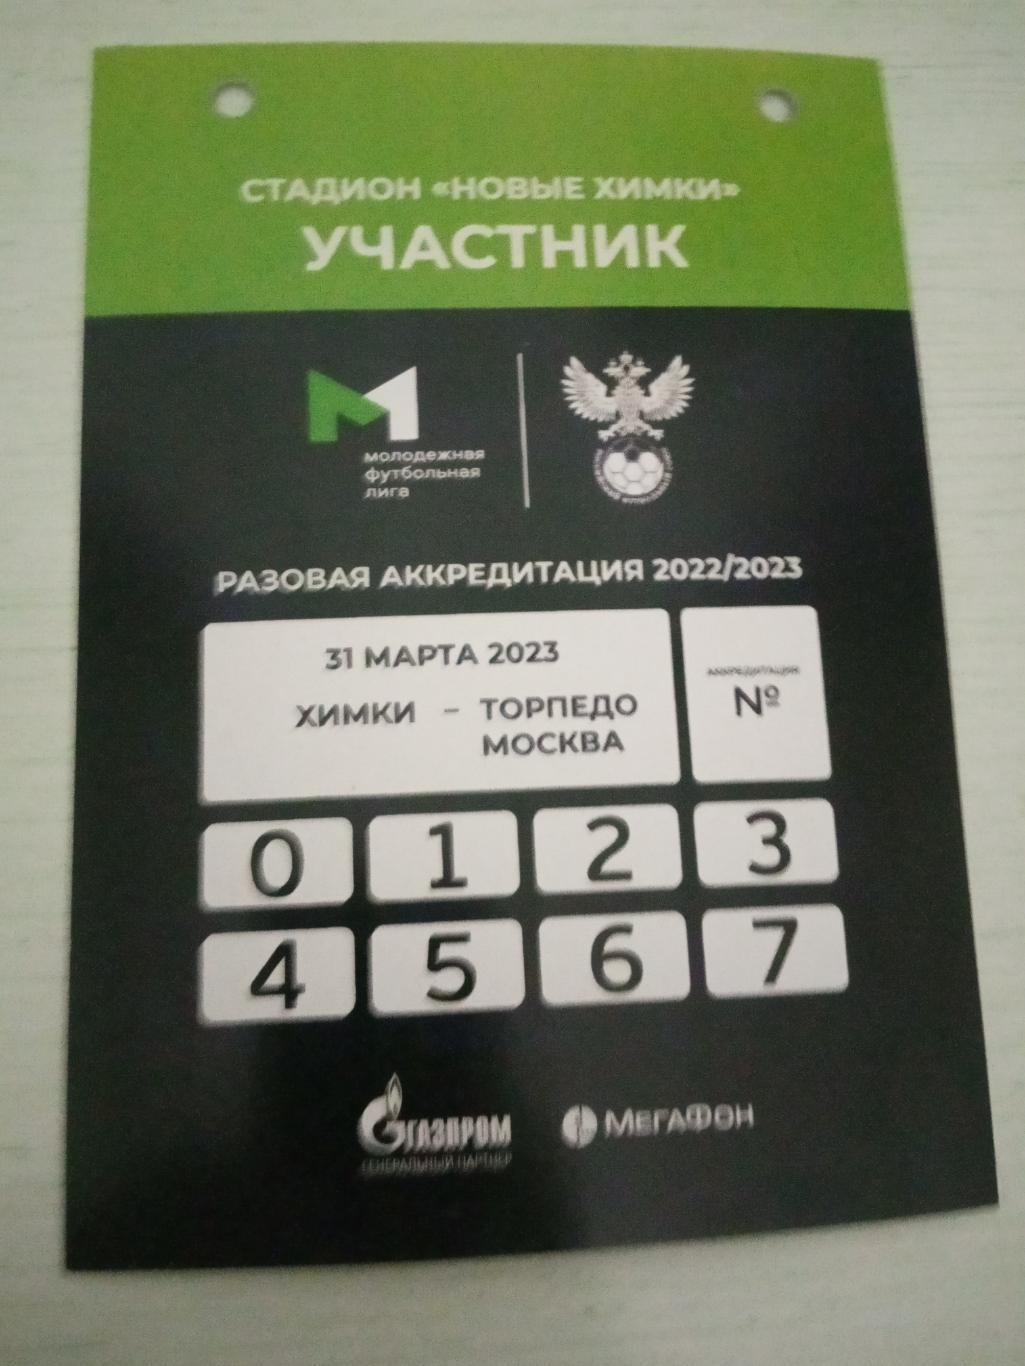 ФК Химки U19 - Торпедо Москва U19 31 марта 2023 аккредитация